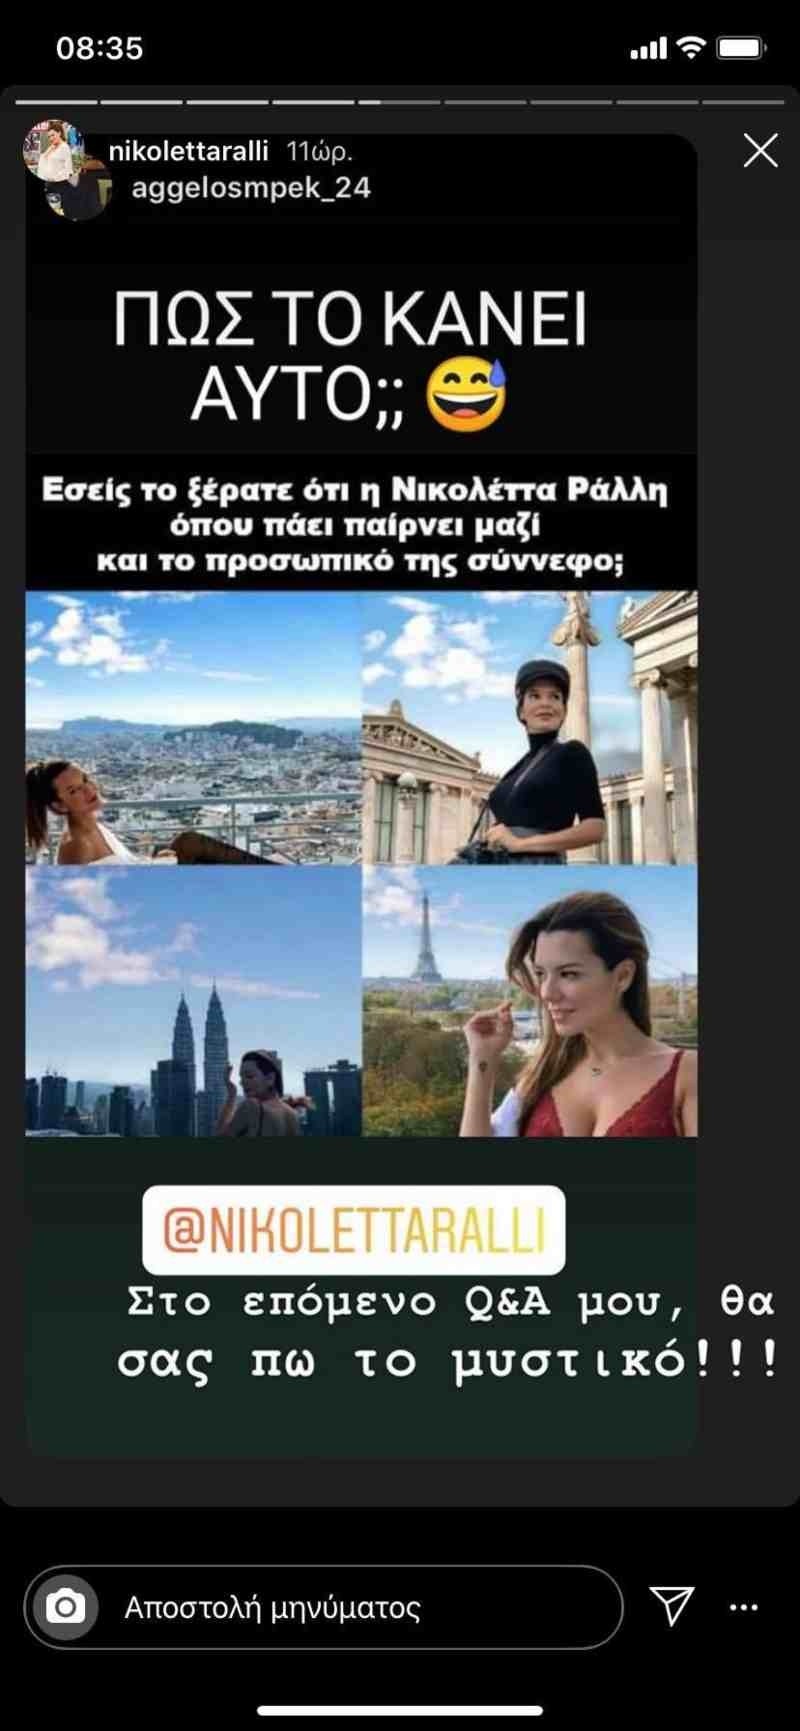 Νικολέτα Ράλλη φωτογραφίες instagram μυστικό 